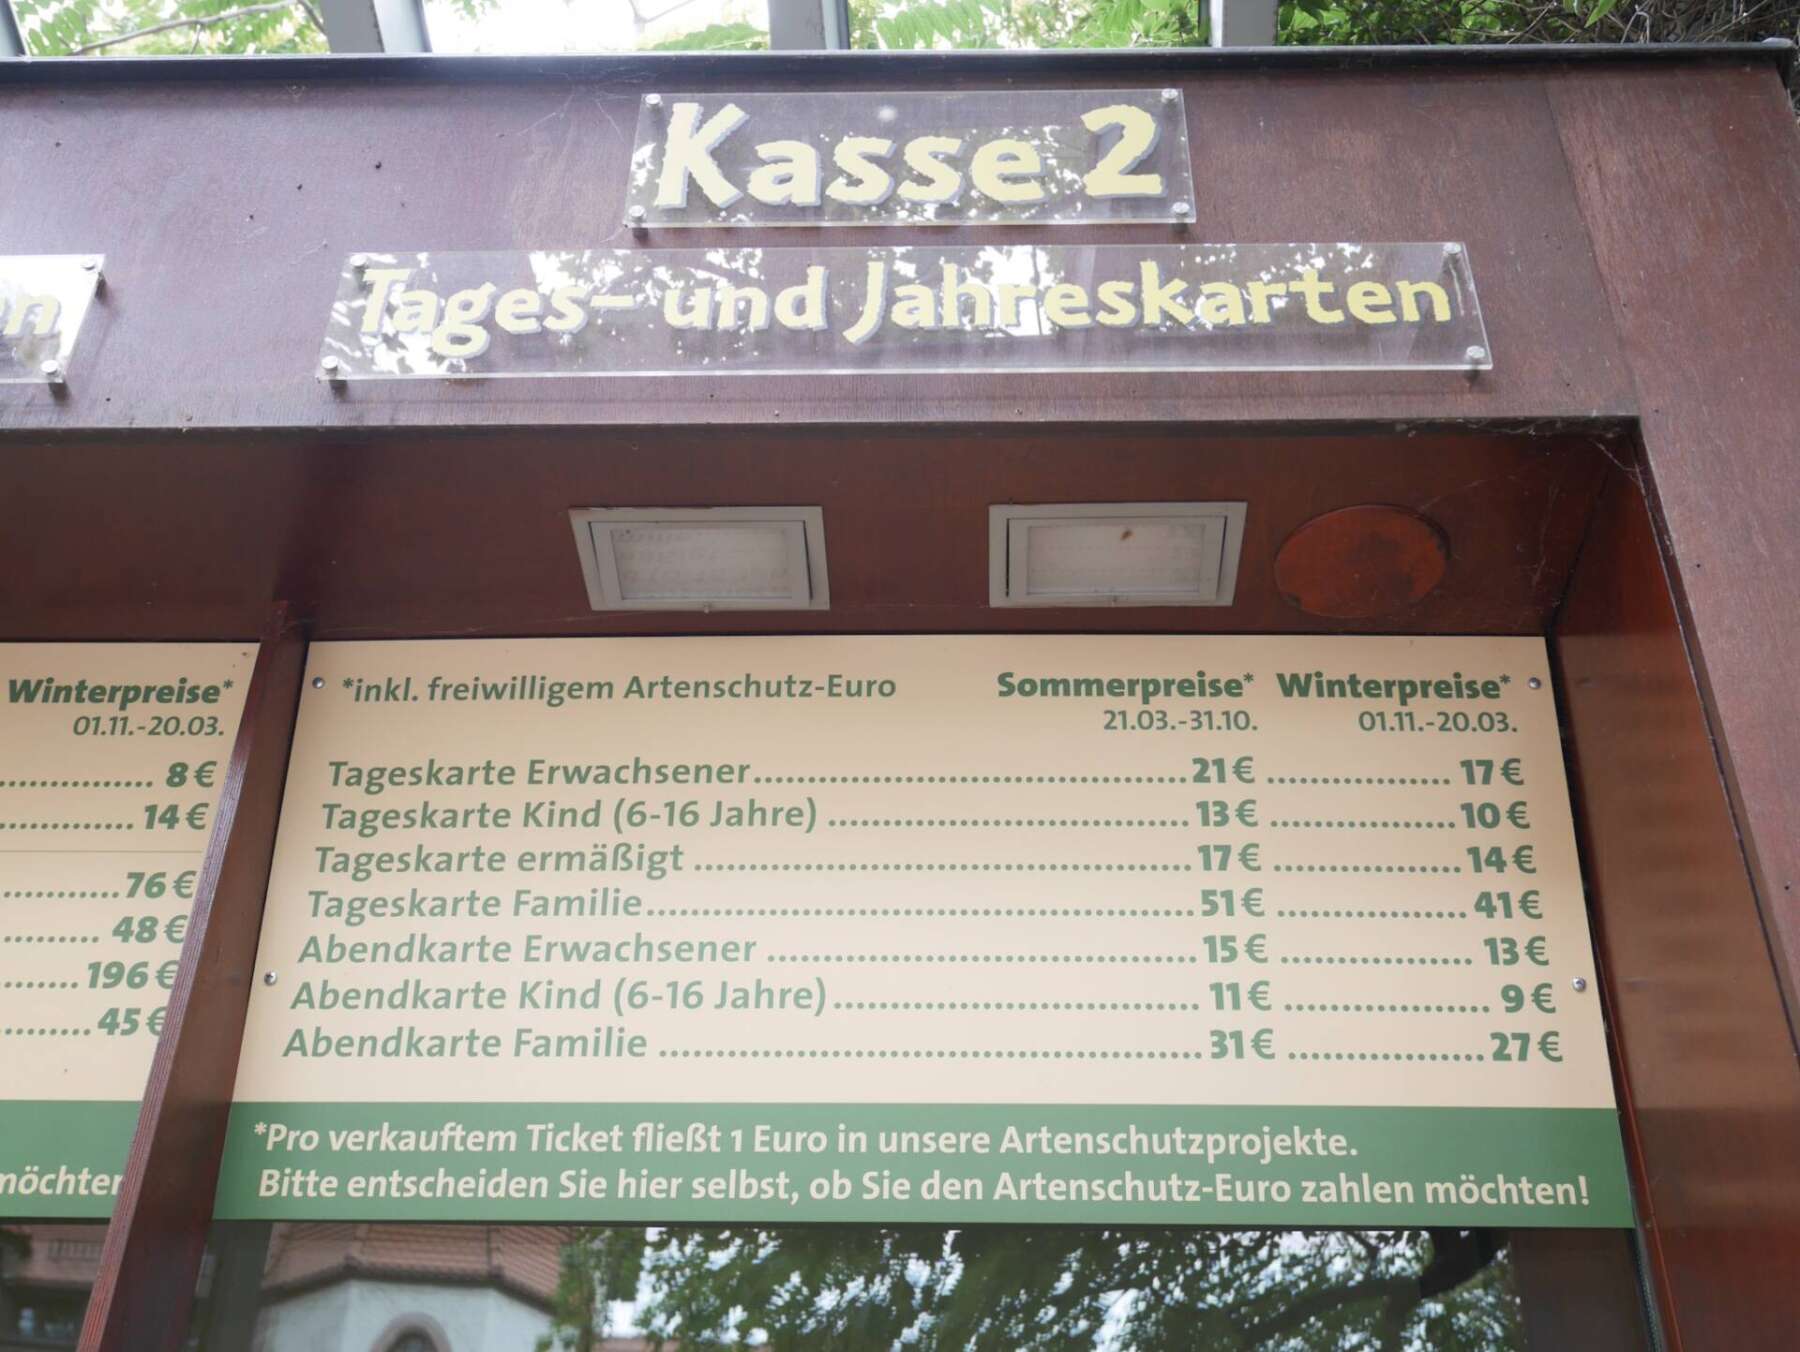 สวนสัตว์ไลพ์ซิช (Zoo Leipzig)